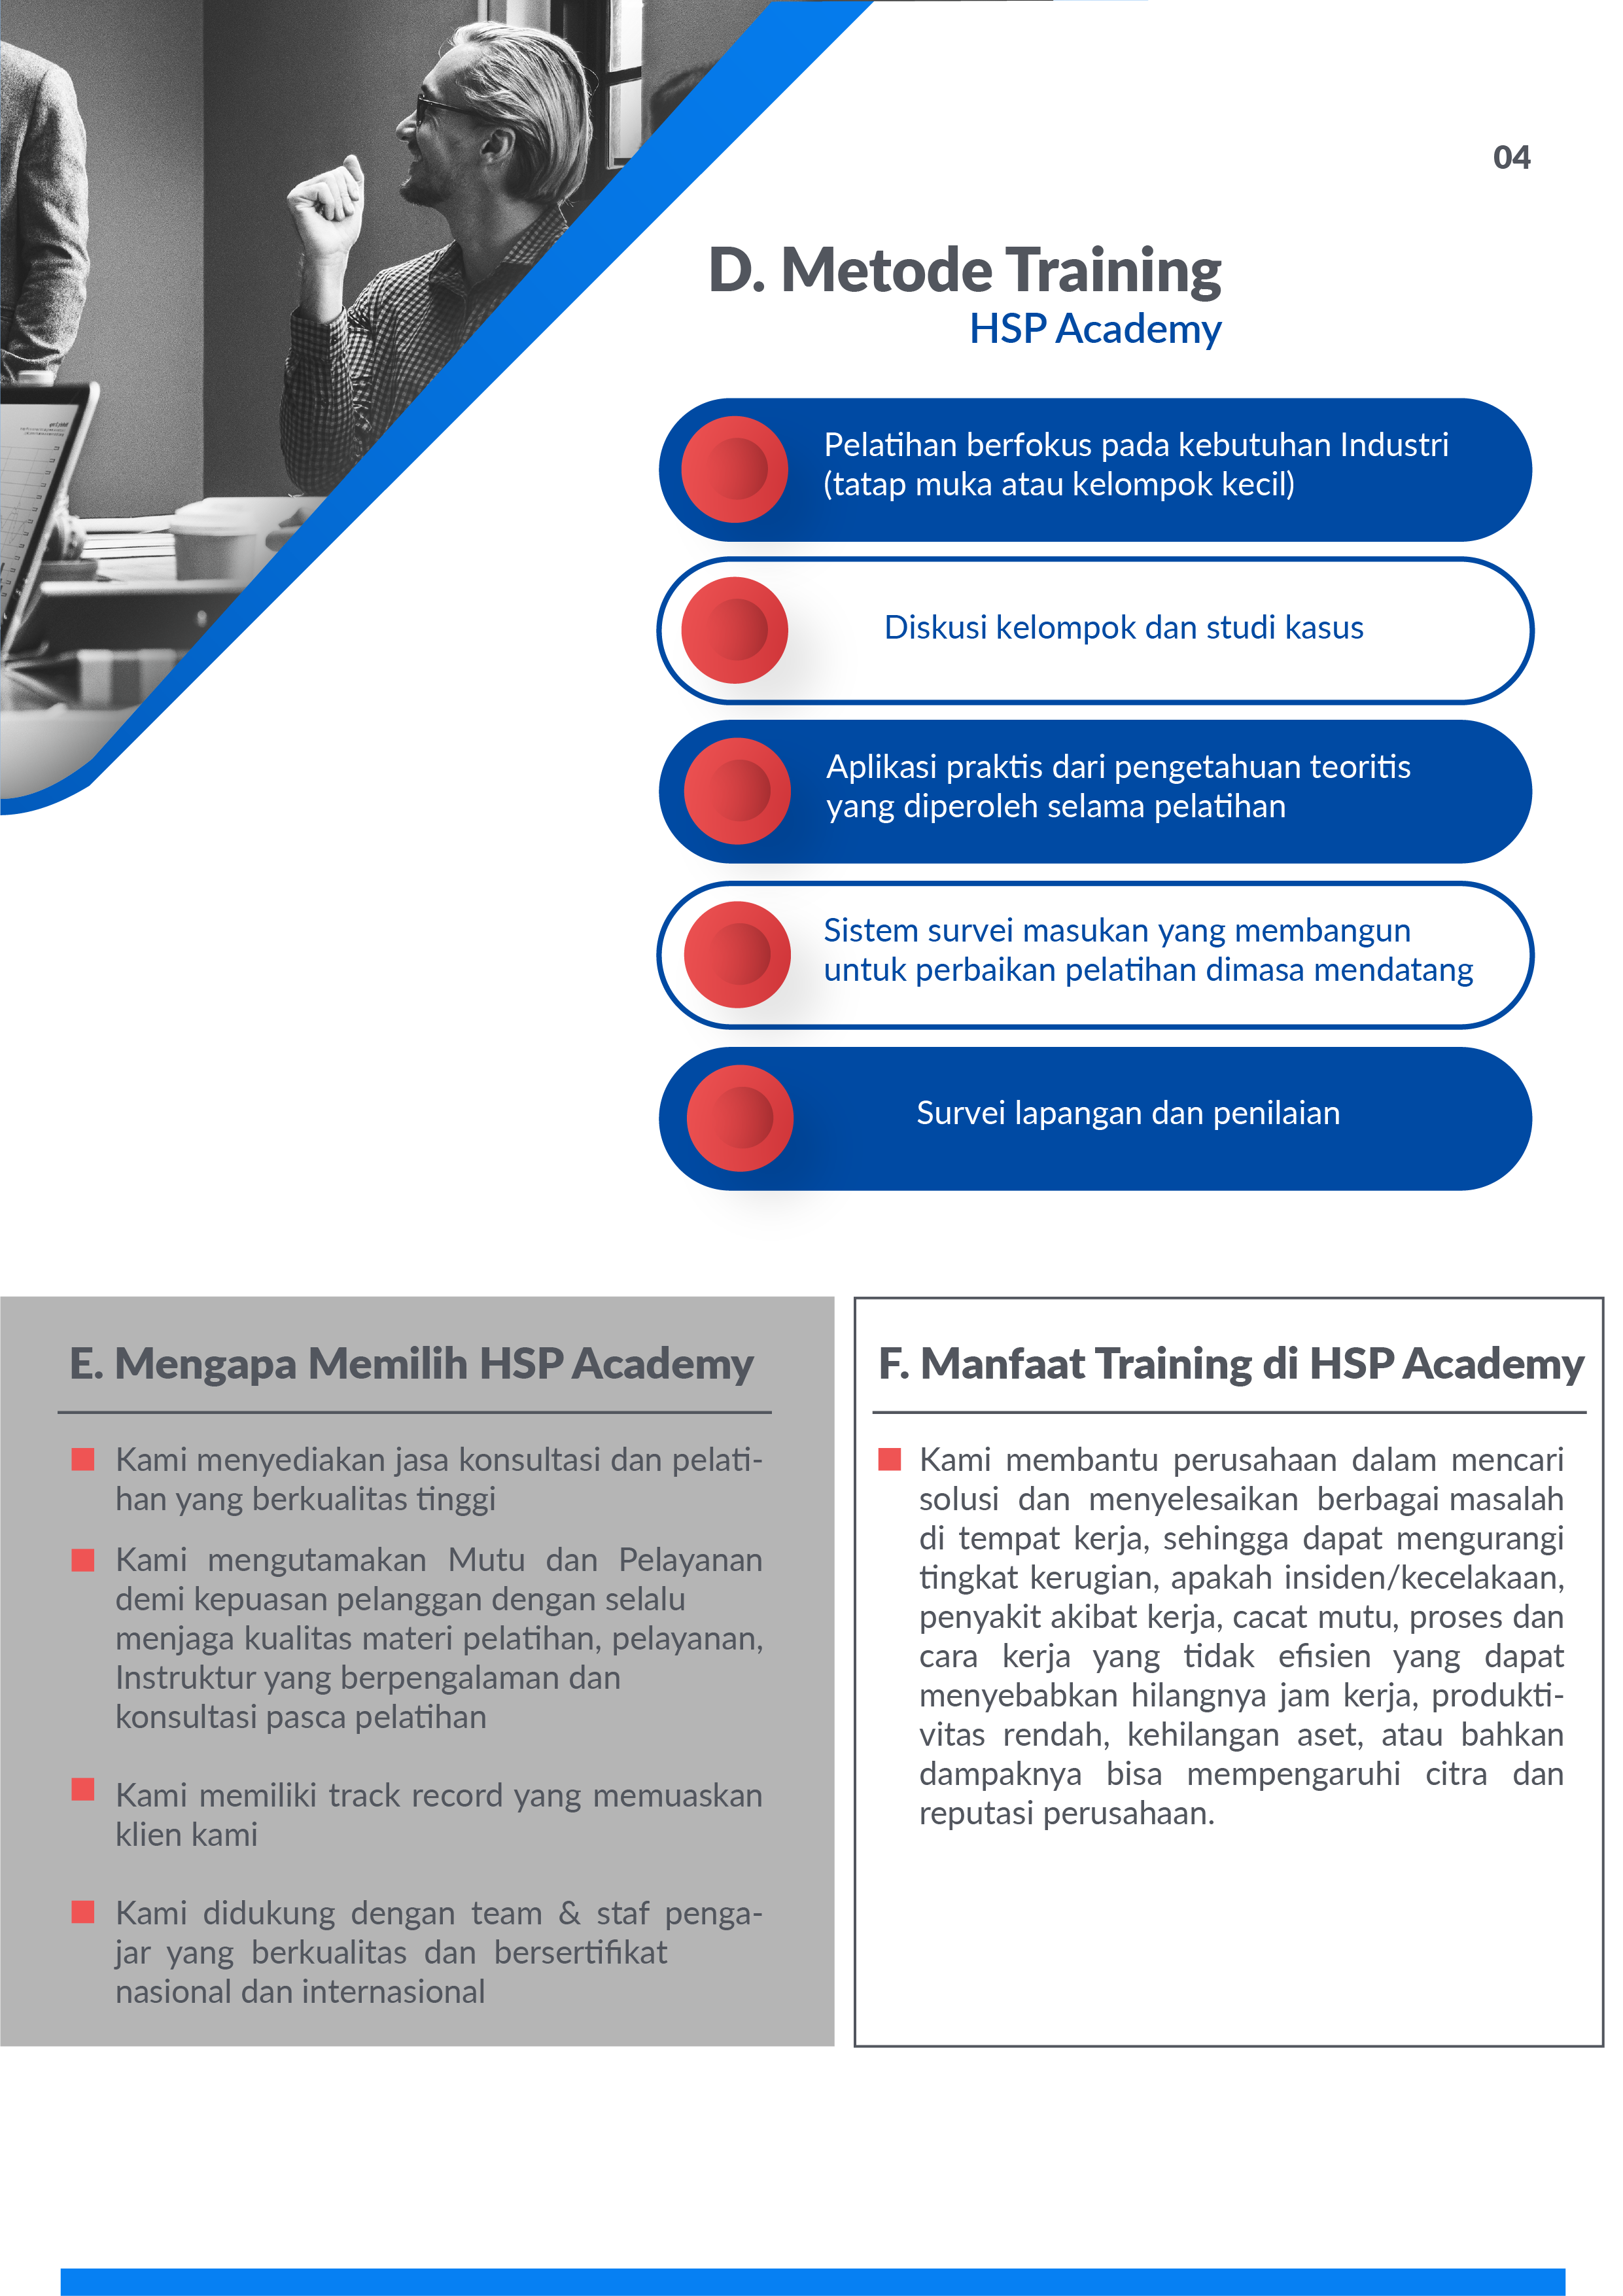 Profil-Perusahaan-HSP-Academy-2020-Bagian-1-08-08